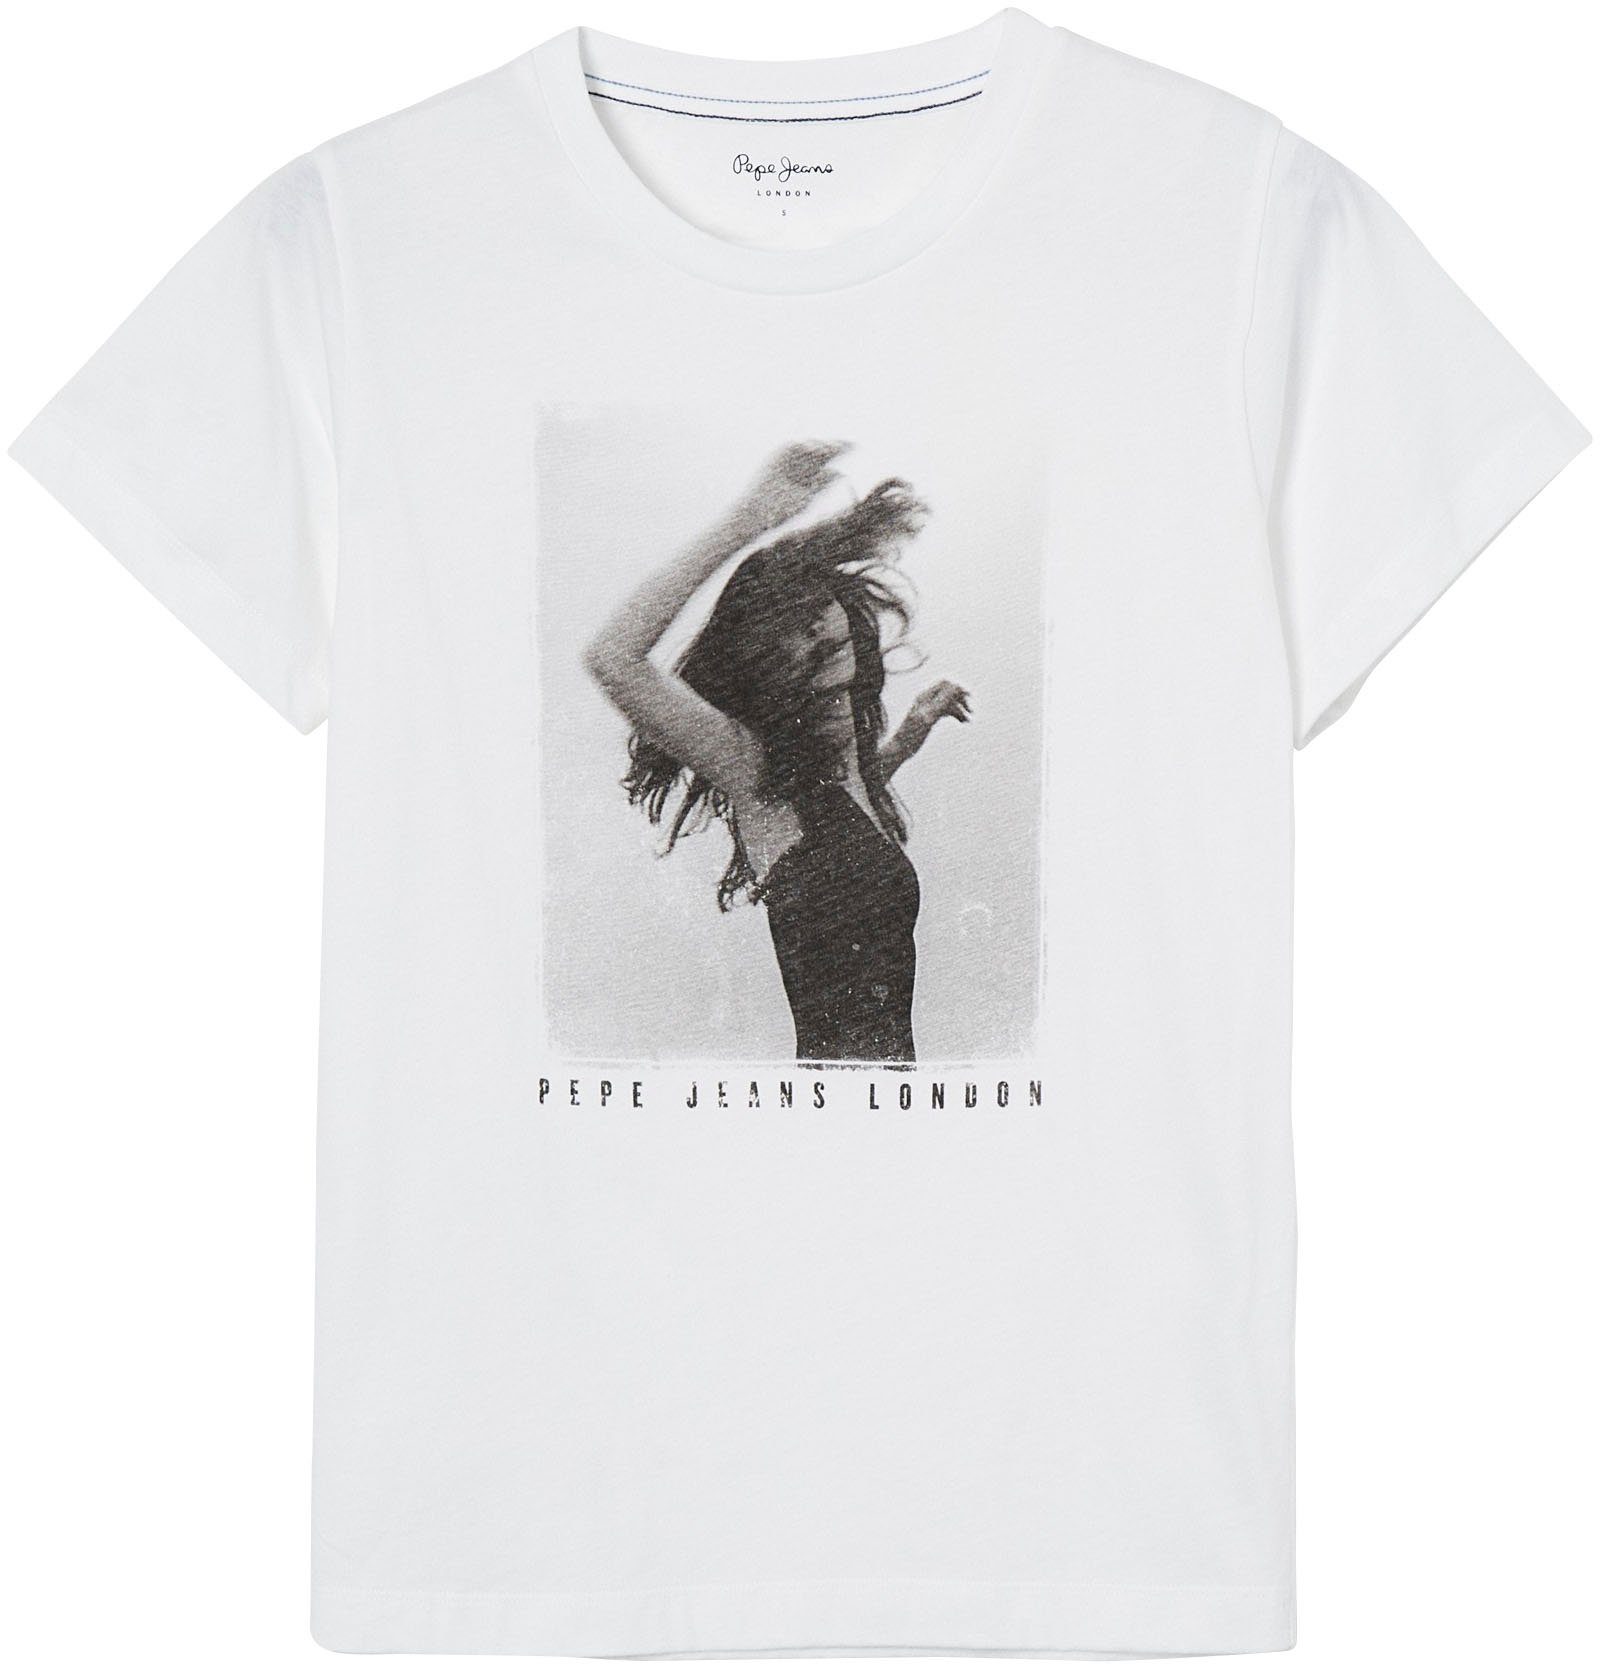 und Frontprint figurbetonter SONYA markentypischem 800WHITE Passform Jeans T-Shirt mit Pepe in tollem